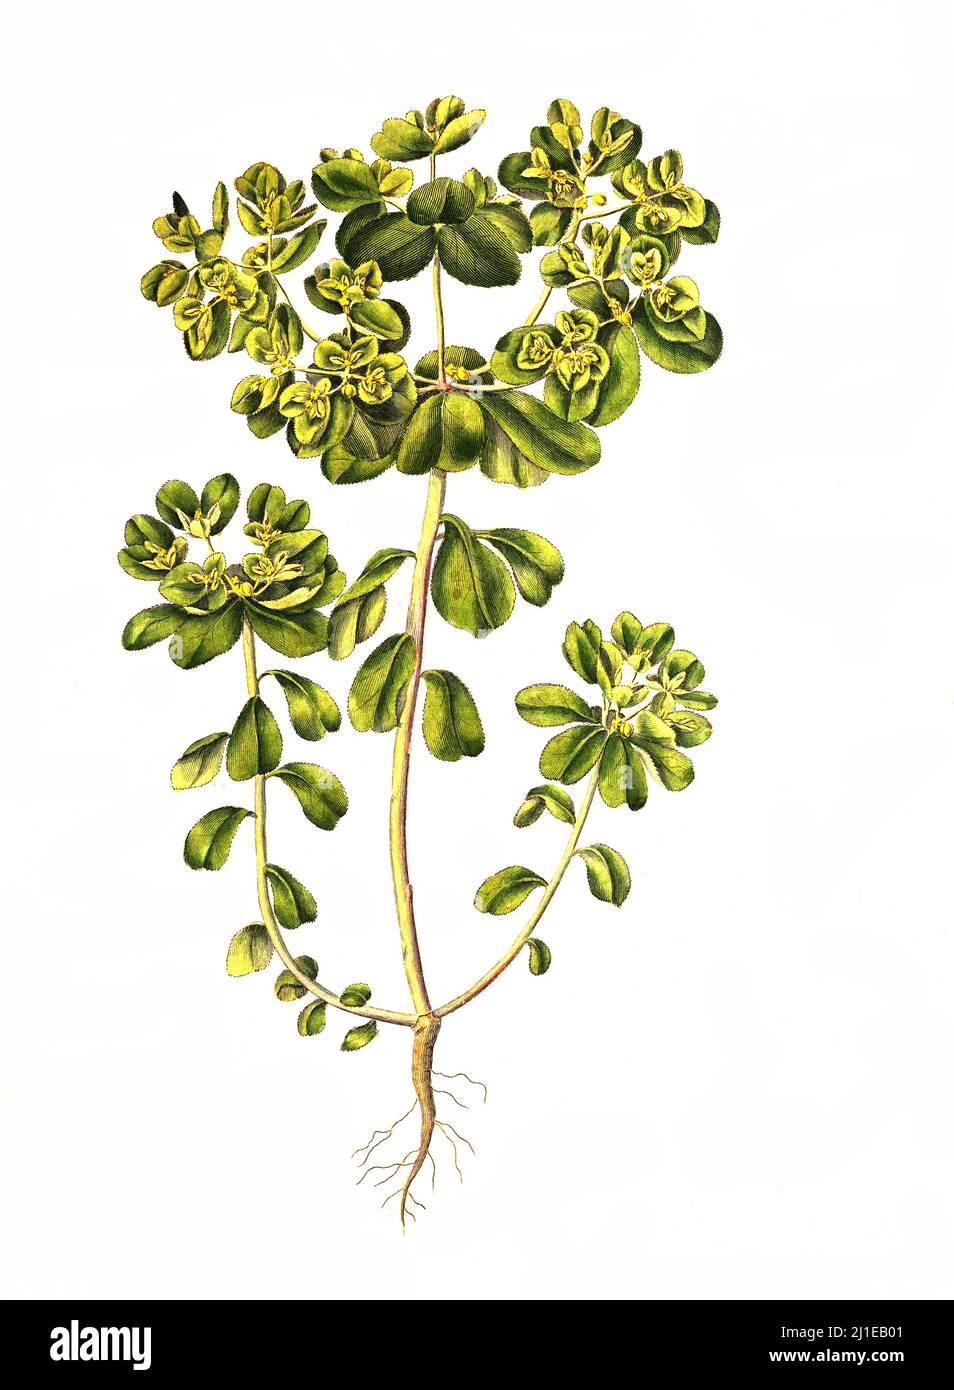 Sonnwend-Wolfsmilch, Euphorbia helioscopia, ist eine Pflanzenart in der Gattung Wolfsmilch  /  Euphorbia helioscopia, the sun spurge, is a species of flowering plant in the spurge family Euphorbiaceae Stock Photo